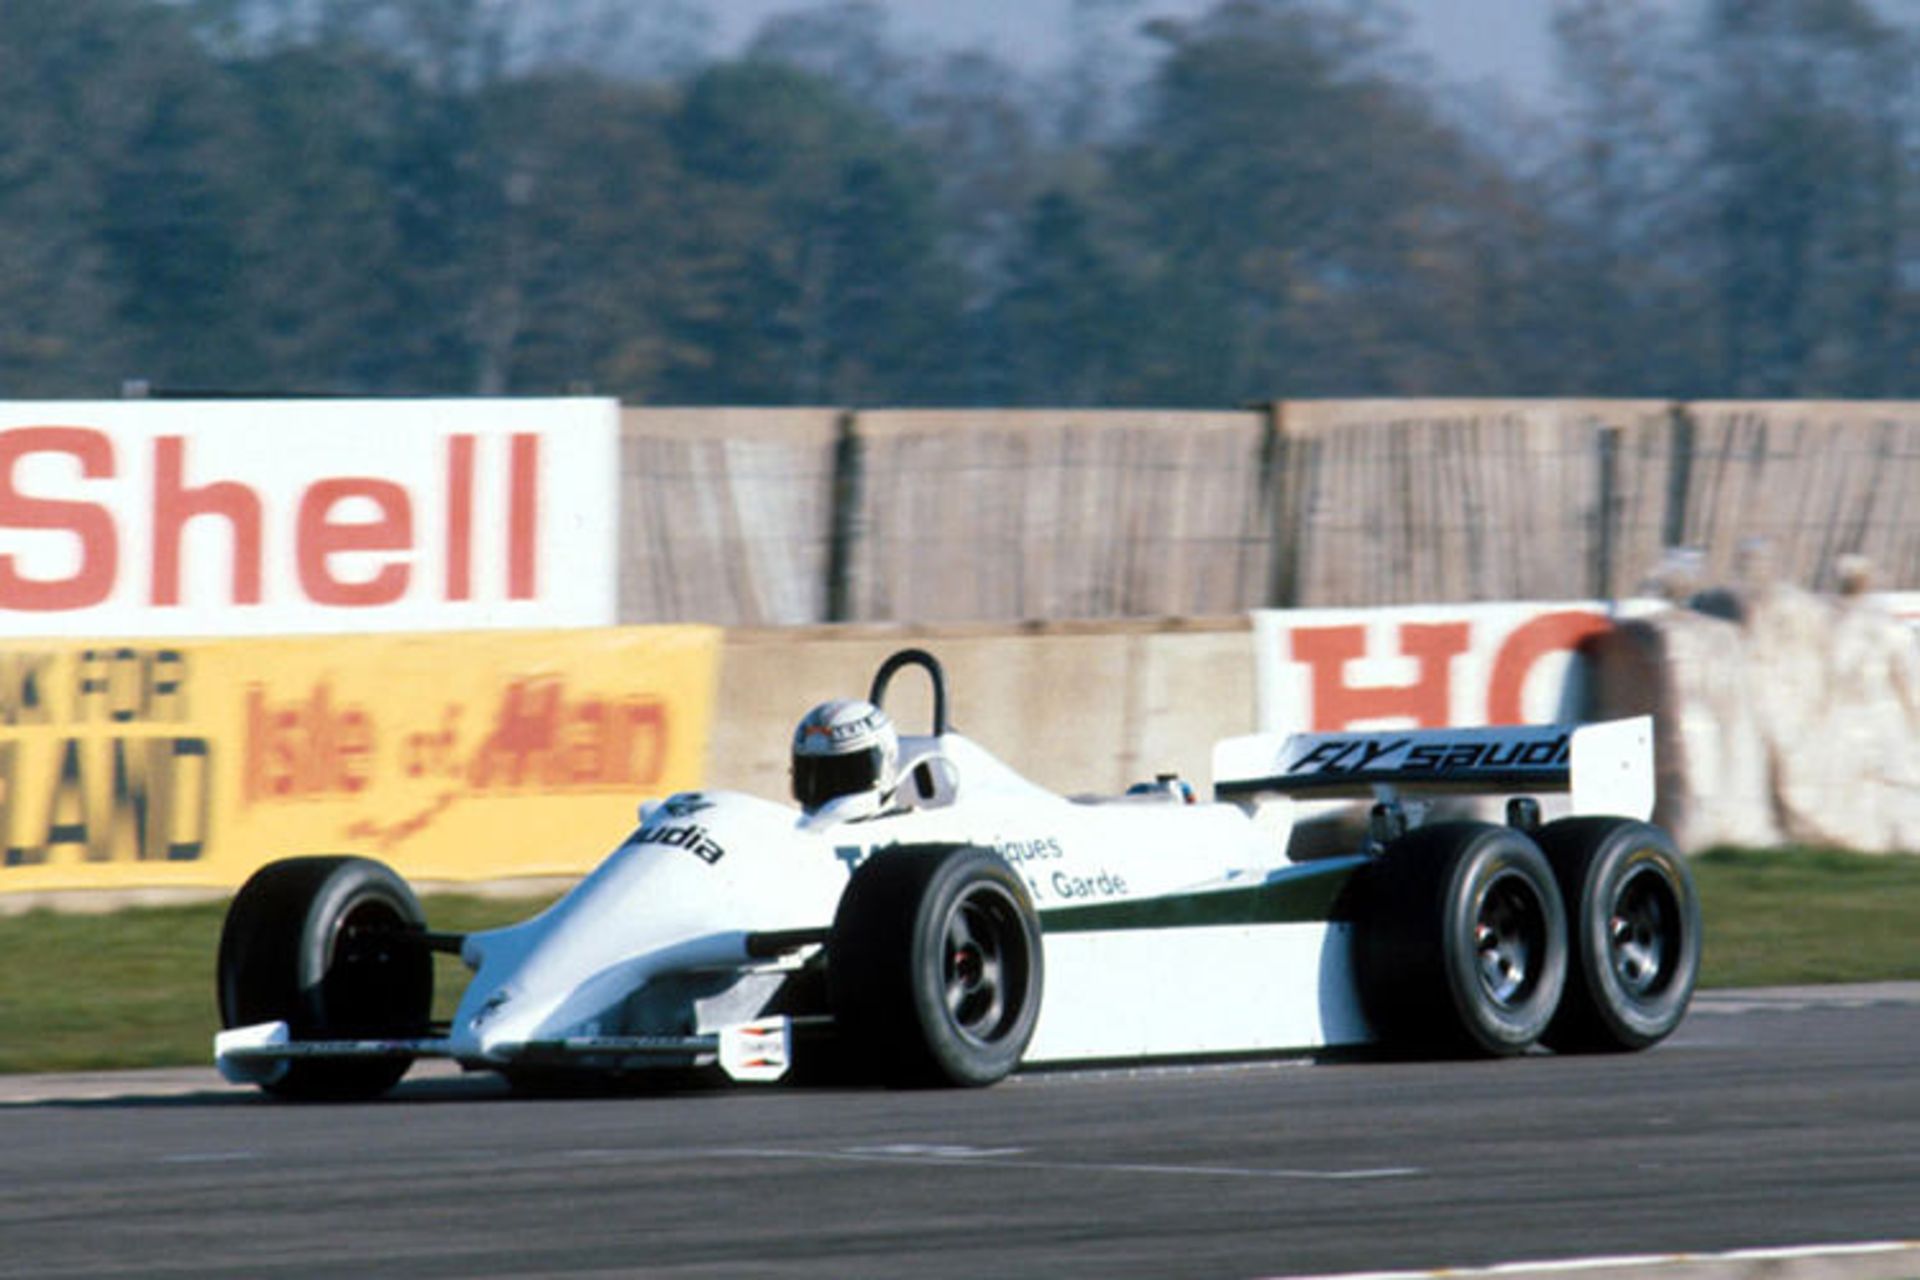 FW07D F1 Williams